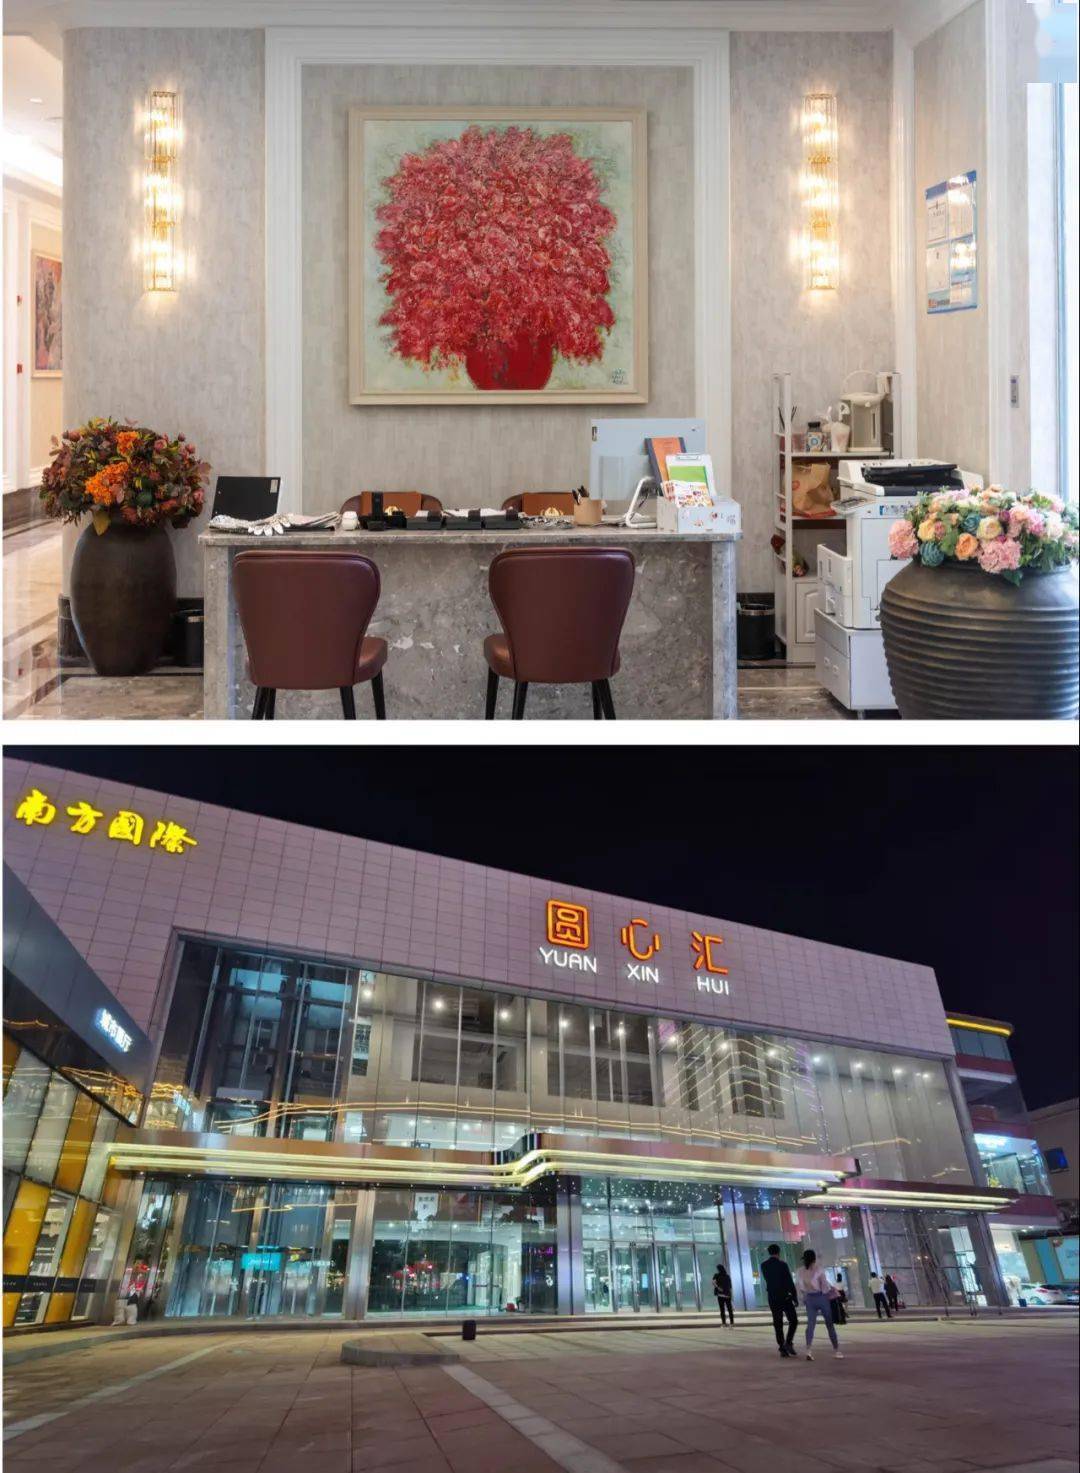 上海新南华大酒店菜单图片